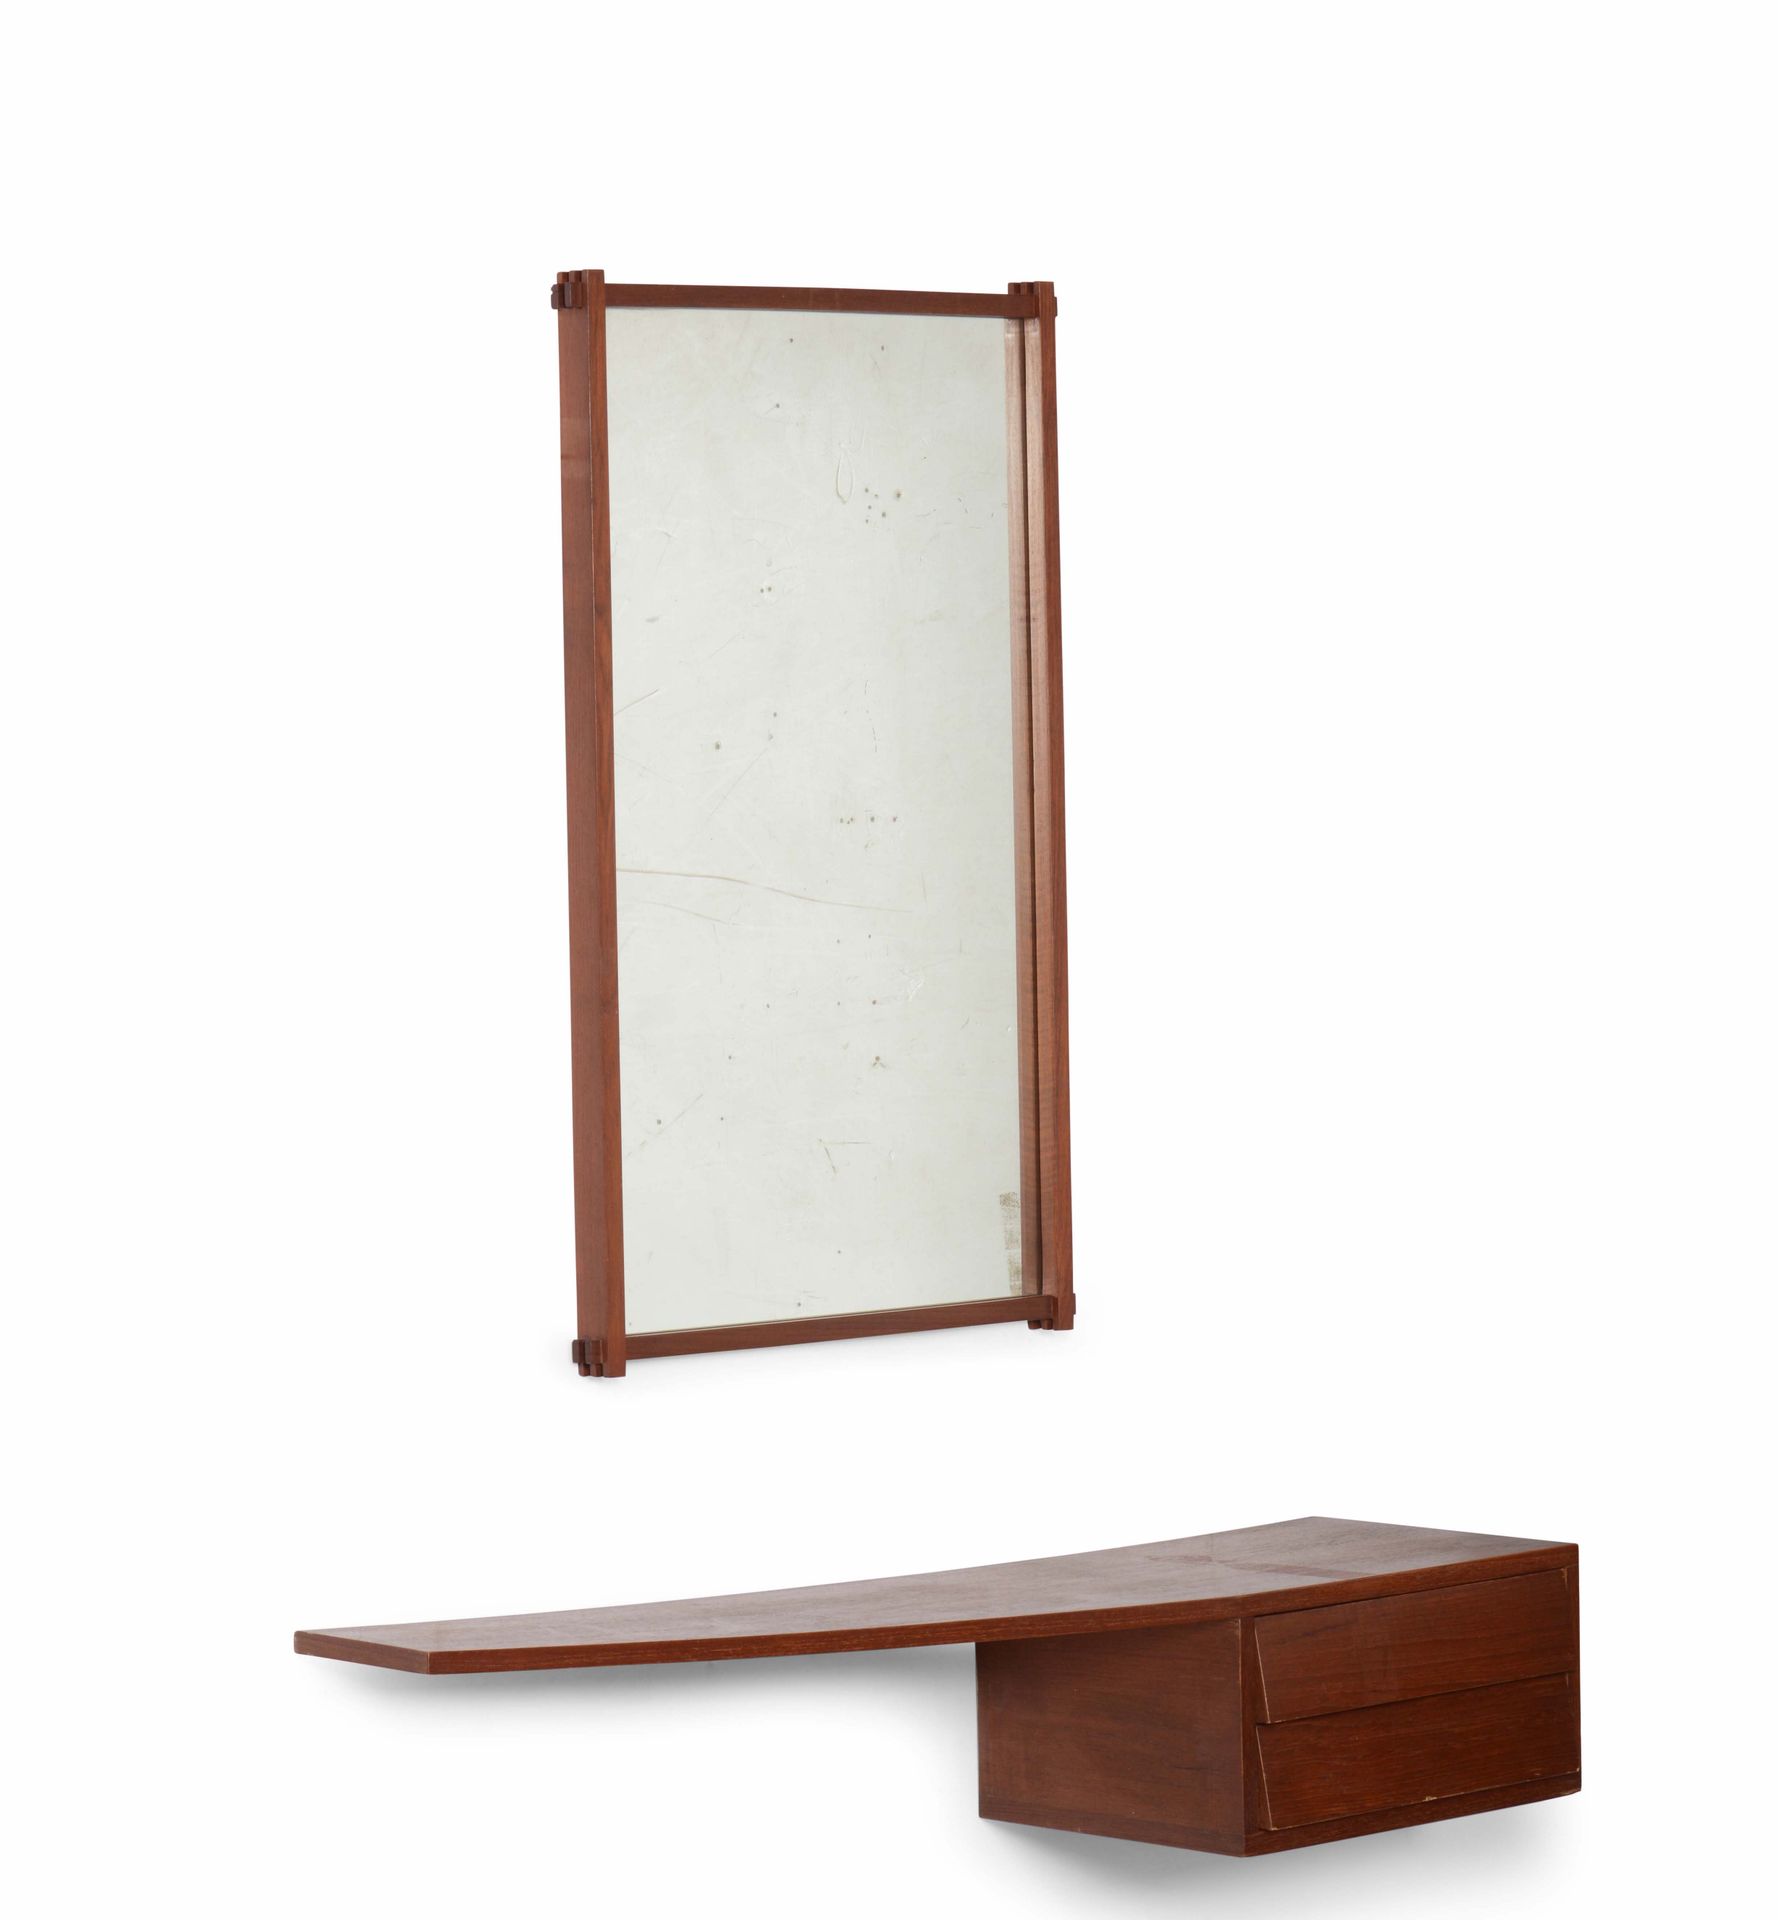 Consolle e specchio con struttura in legno e cristallo specchiato., Prod. Italia&hellip;